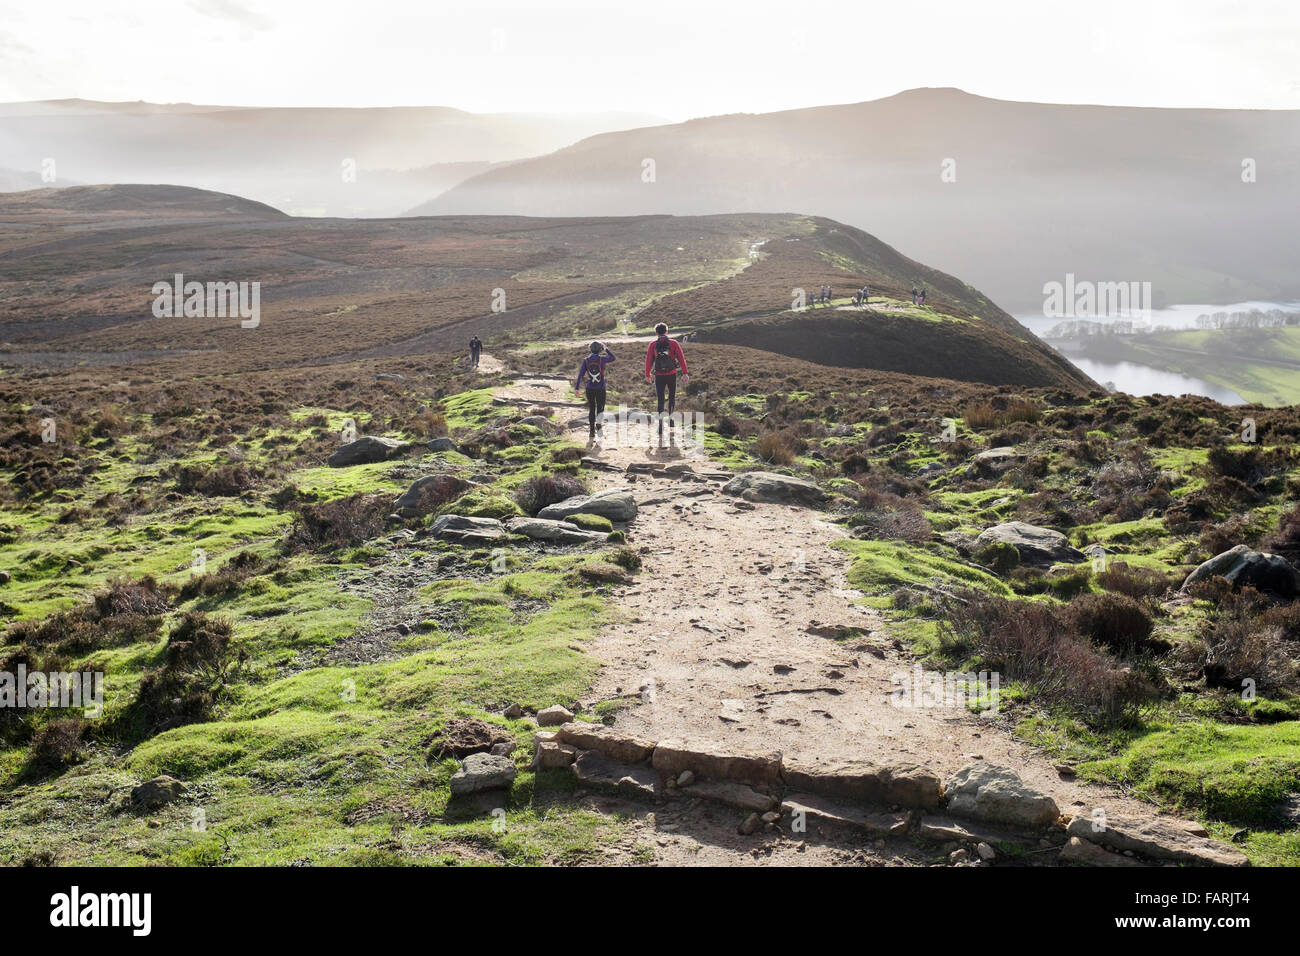 Les coureurs s'suivre un chemin bien défini sur Derwent Moor, le parc national de Peak District, Derbyshire, Angleterre, RU Banque D'Images